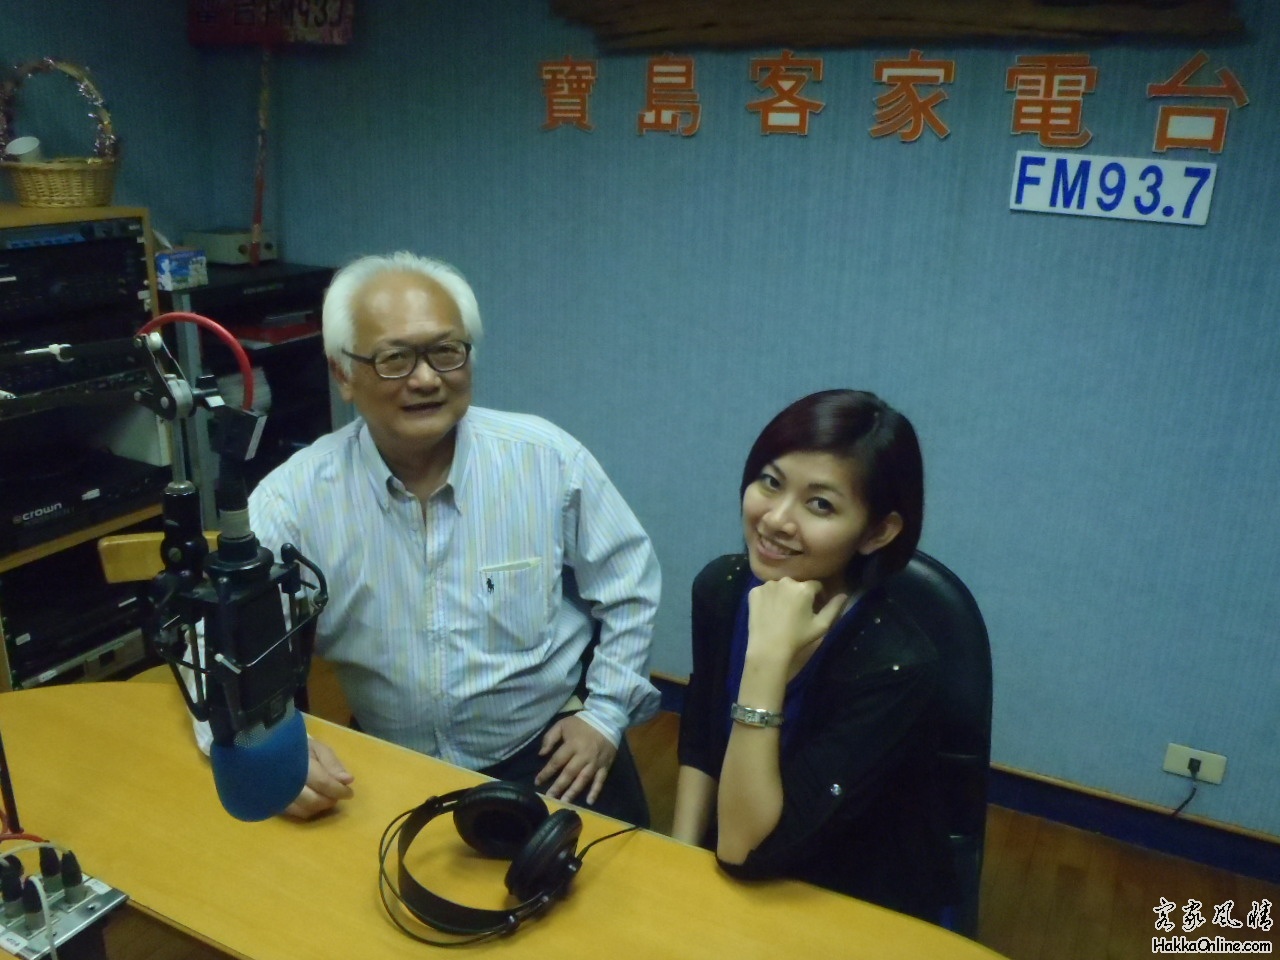 模拟台湾客家电台的"俊"男和"鈺"女接受采访5